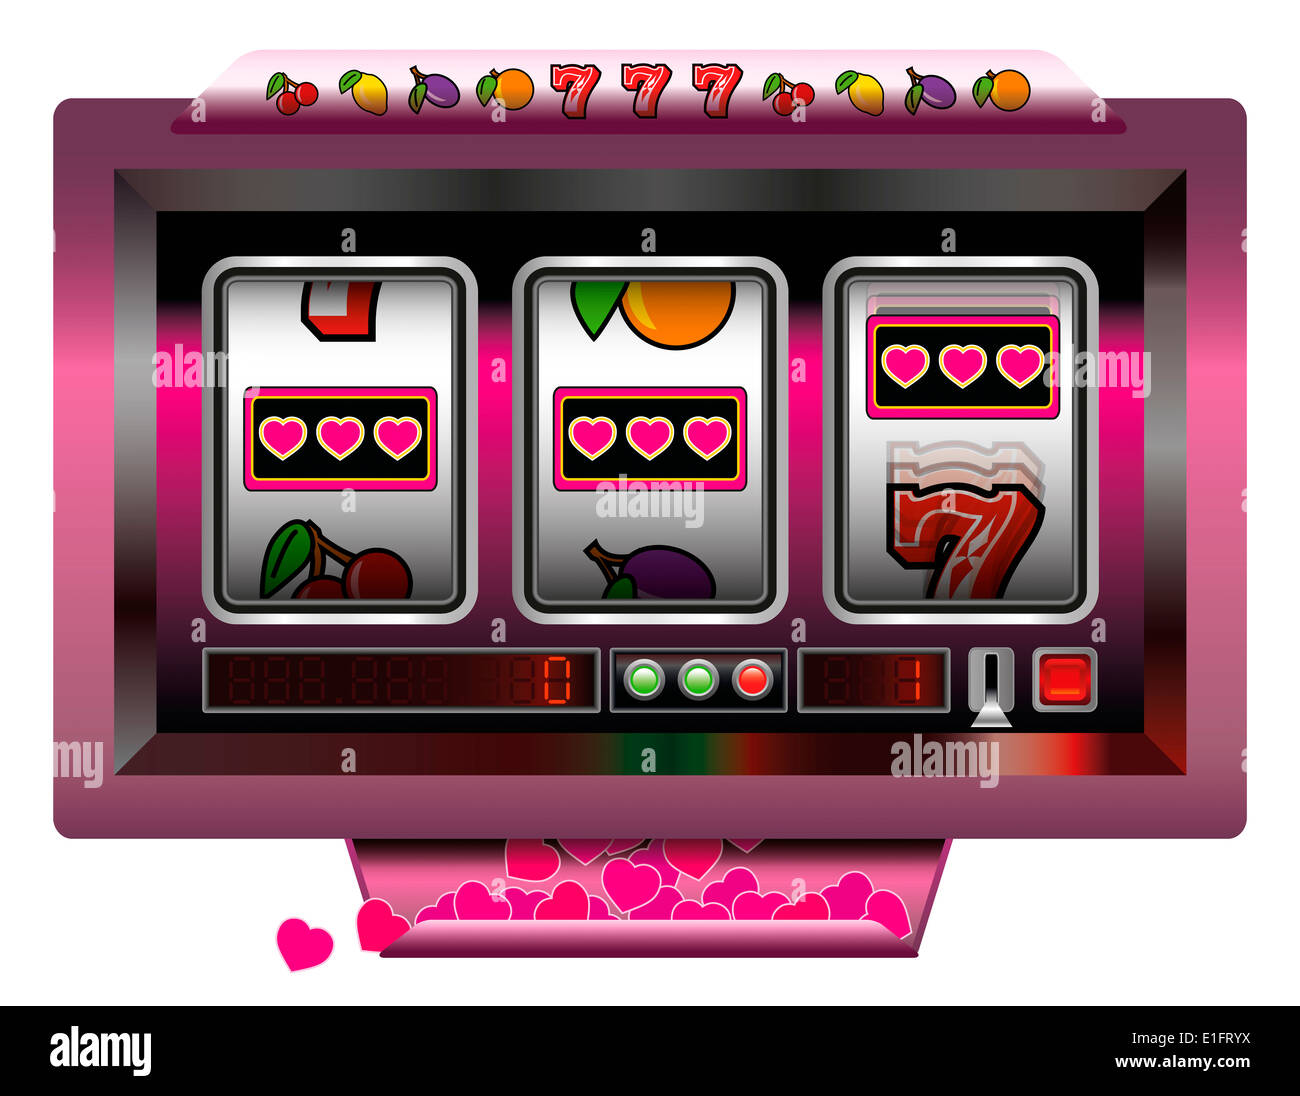 Spielautomat mit drei Walzen, Spielautomaten Symbole und einen Jackpot mit Herzen. Stockfoto